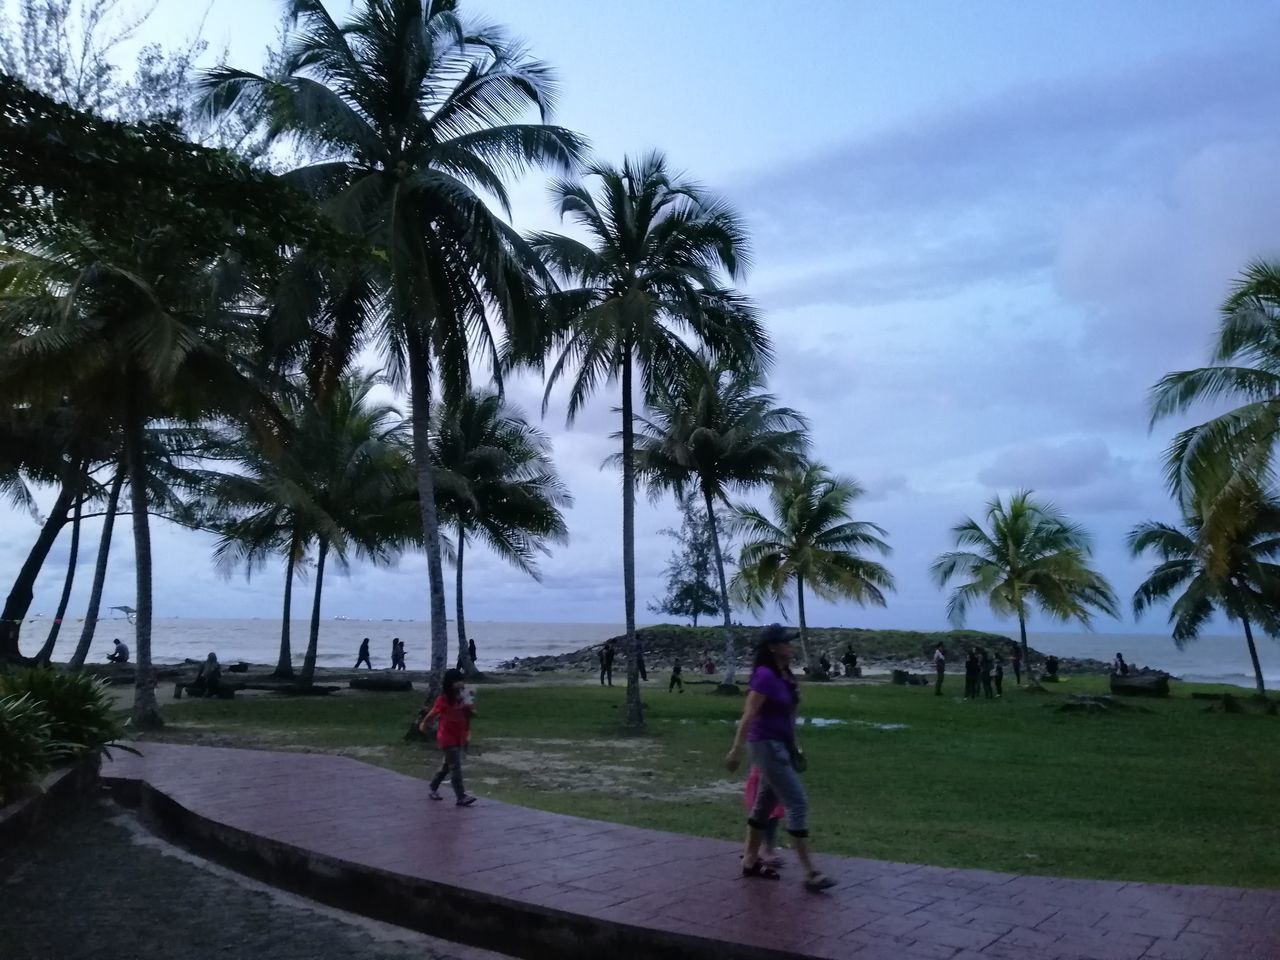 PEOPLE WALKING AT BEACH AGAINST SKY